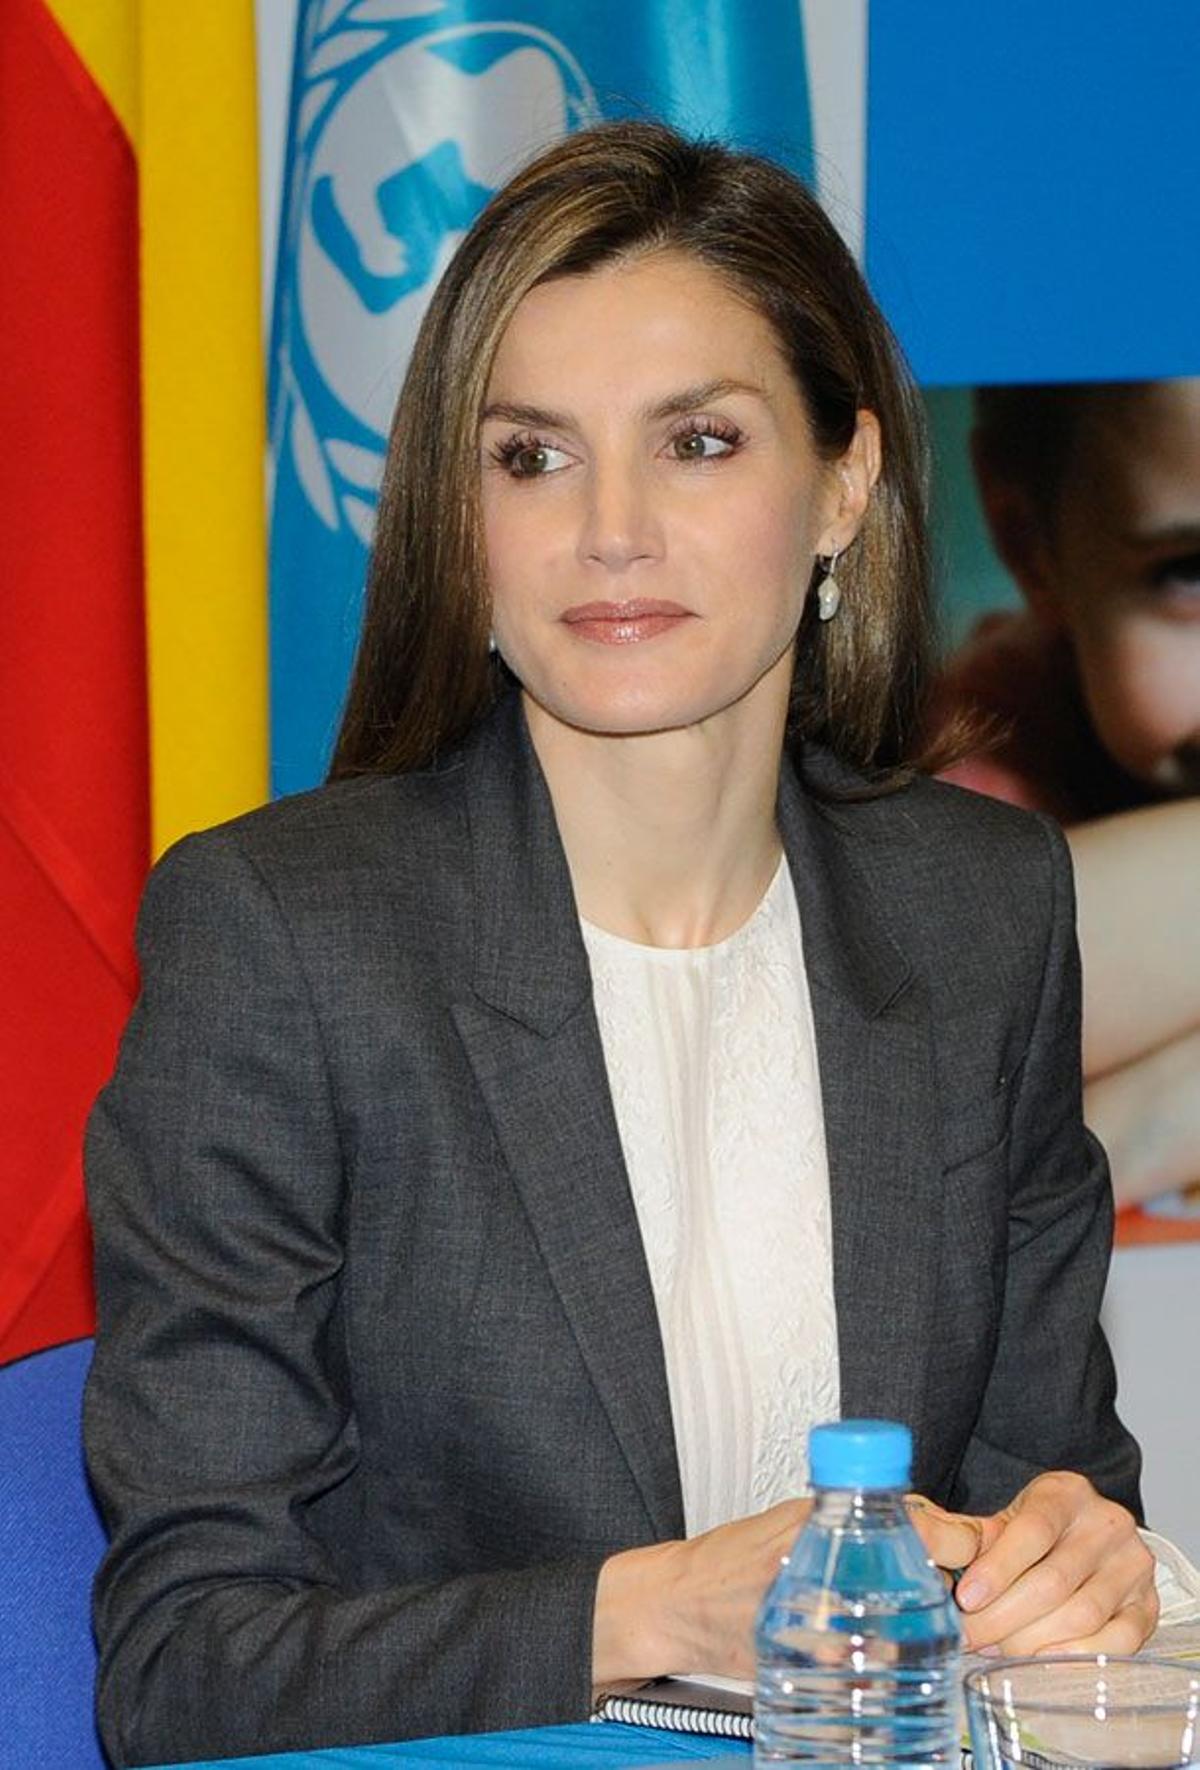 Letizia Ortiz en la Sede de UNICEF en Madrid con chaqueta gris